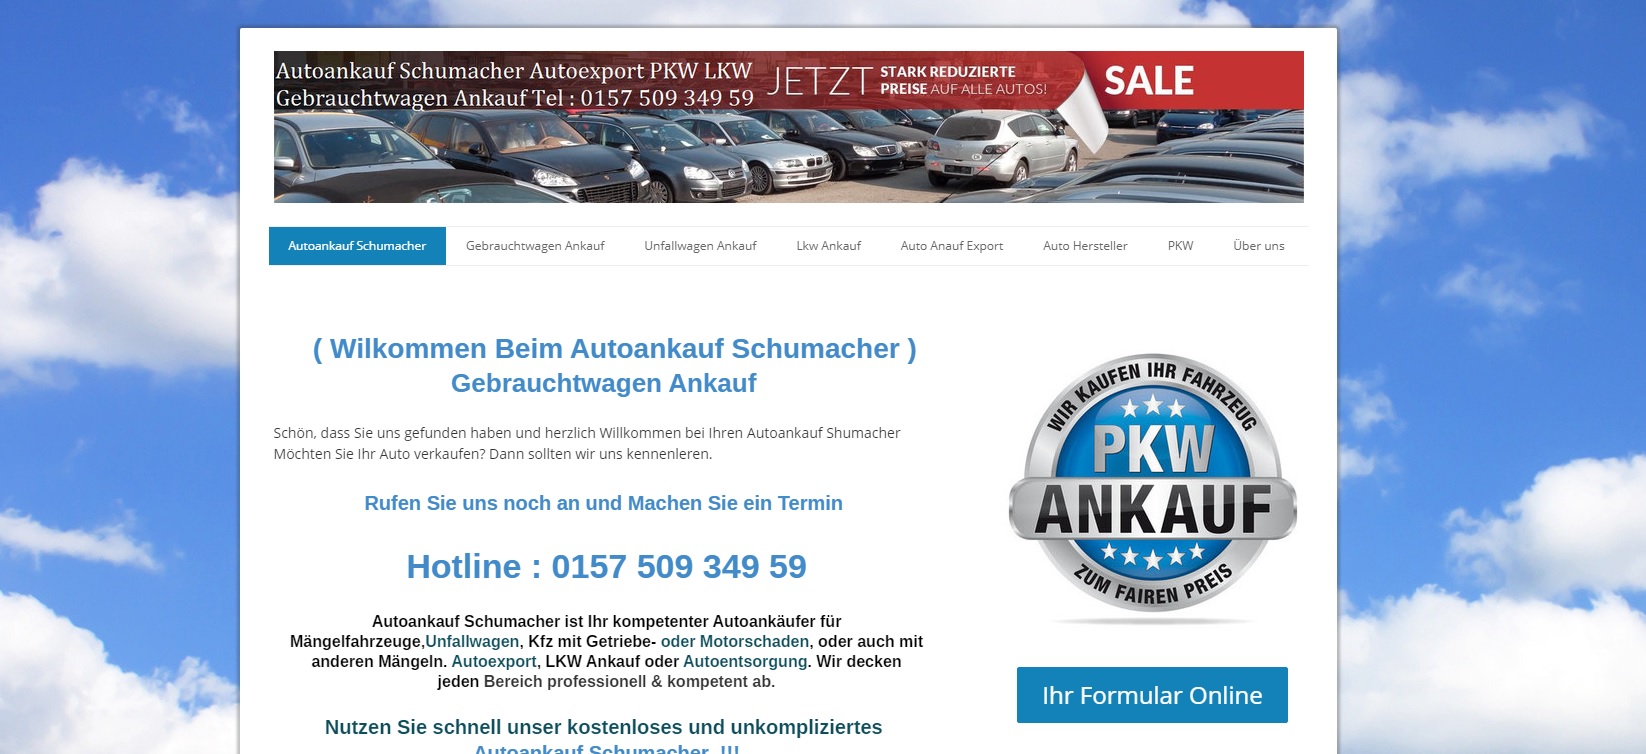 Autoankauf Dortmund – Ankauf von AutoAnkauf Schumacher Dortmund